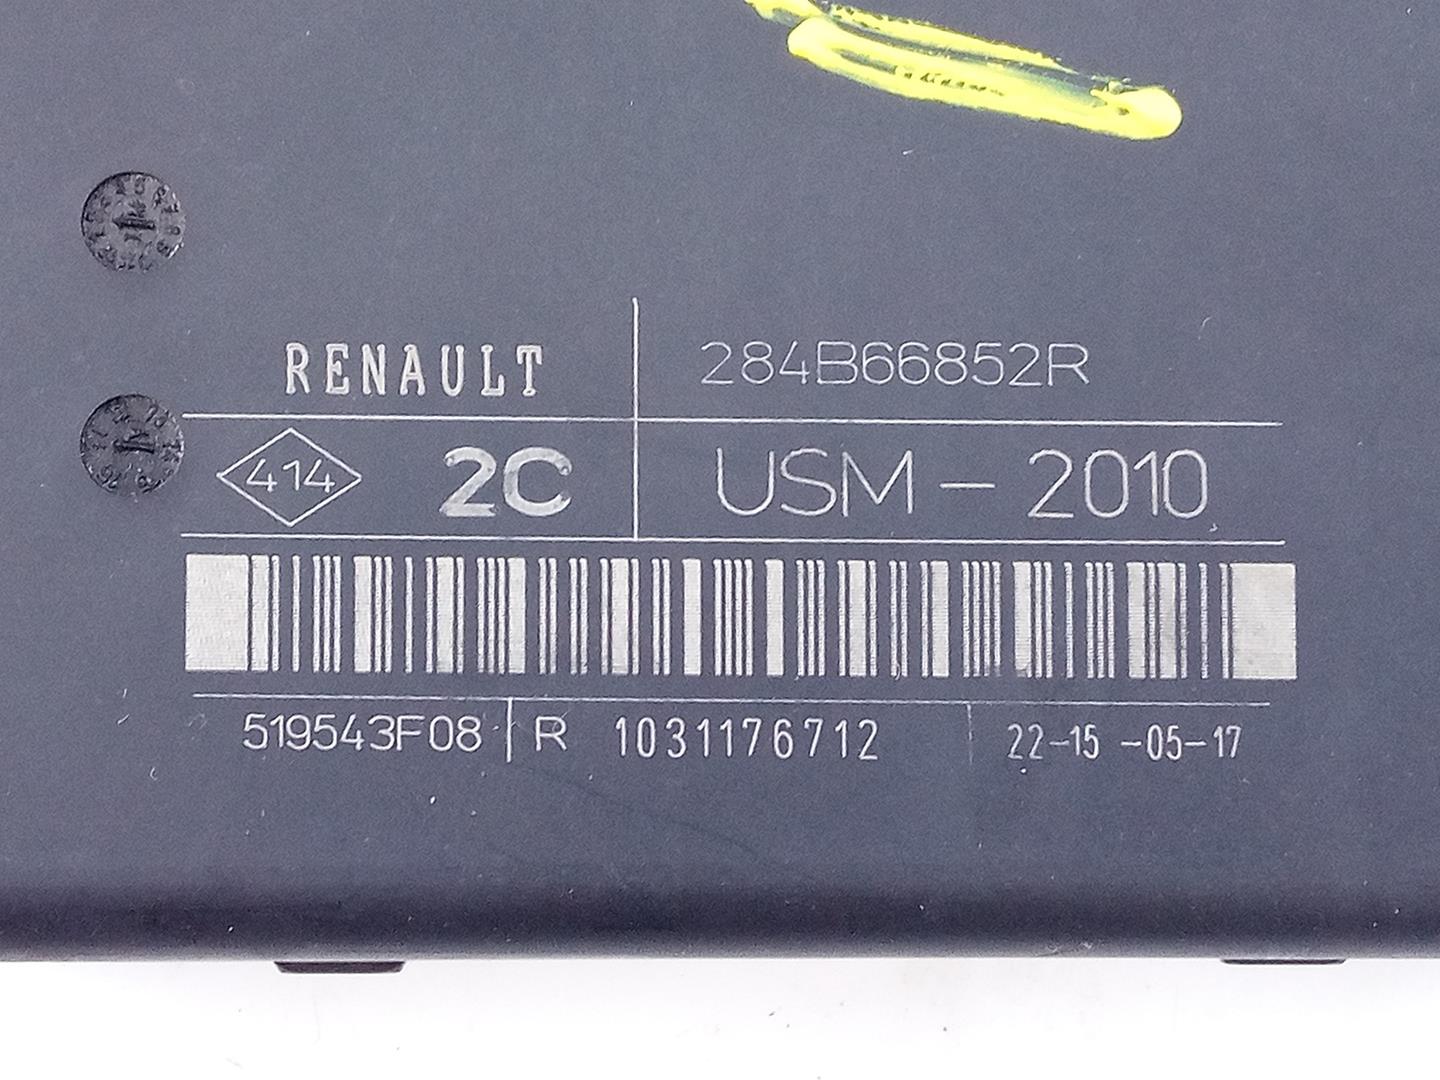 RENAULT C7/4G (2010-2020) Fuse Box 284B66852R, E2-A3-13-1 23296022